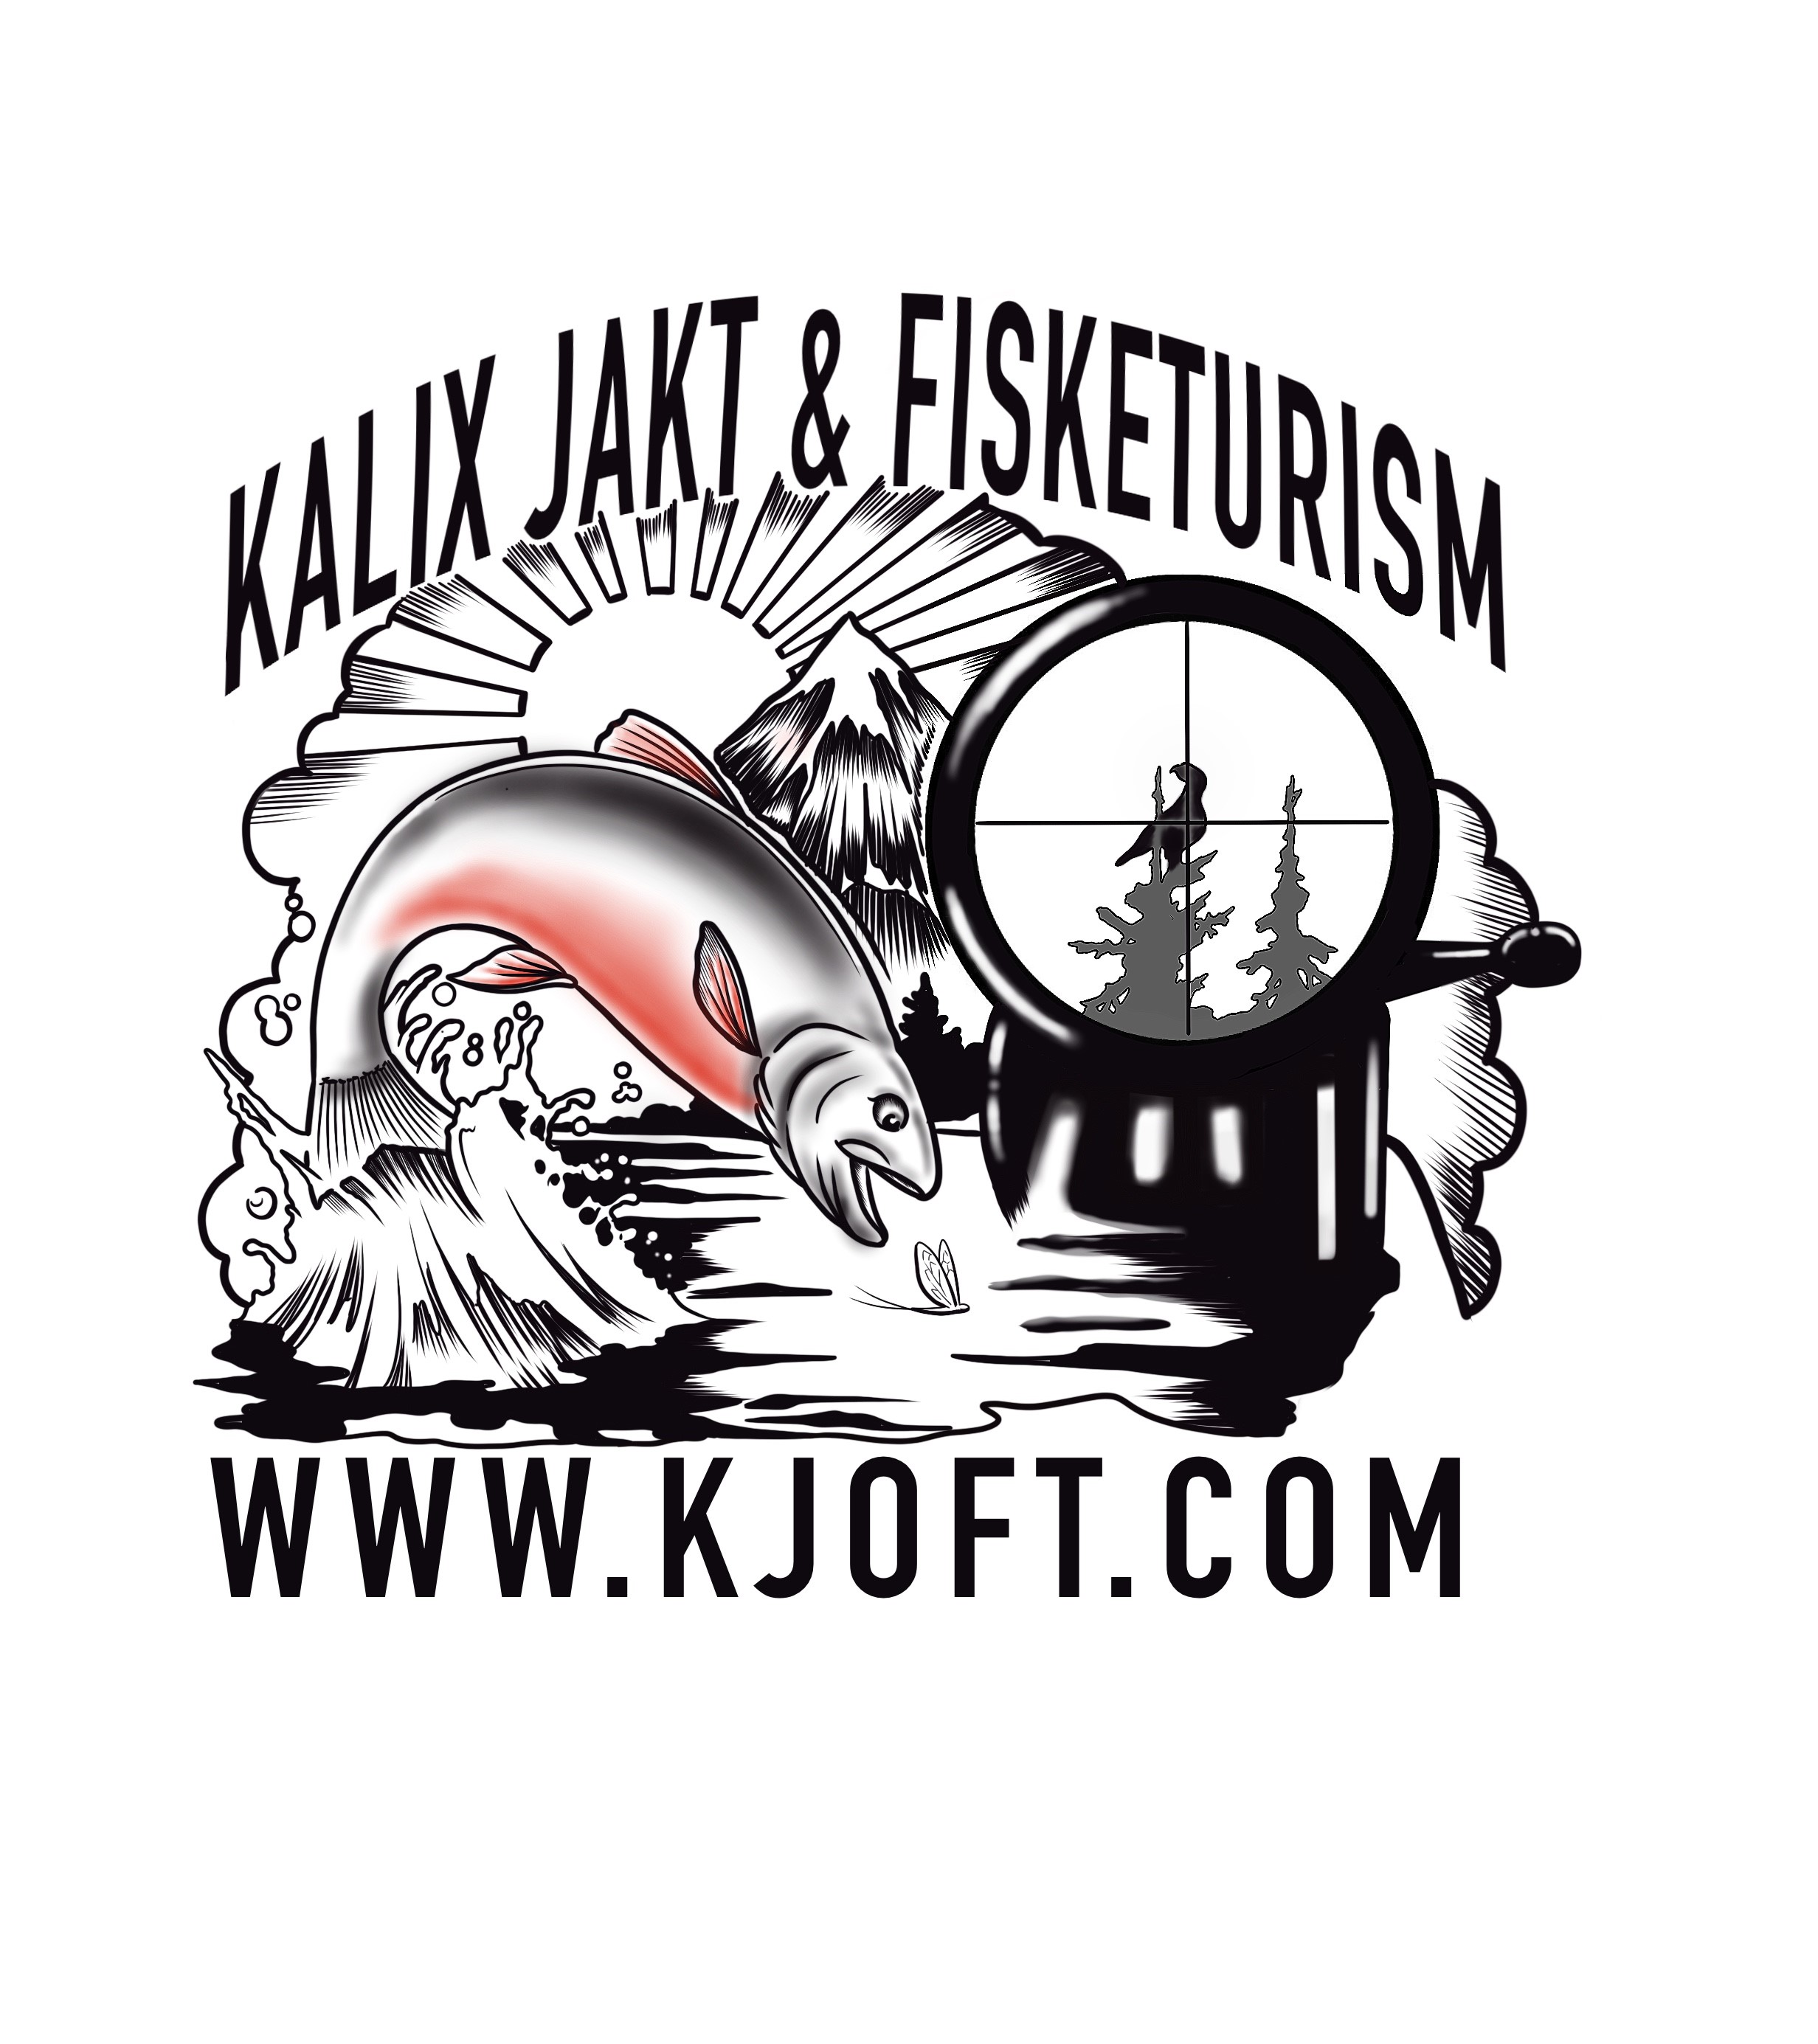 Kalix Jakt & Fisketurism